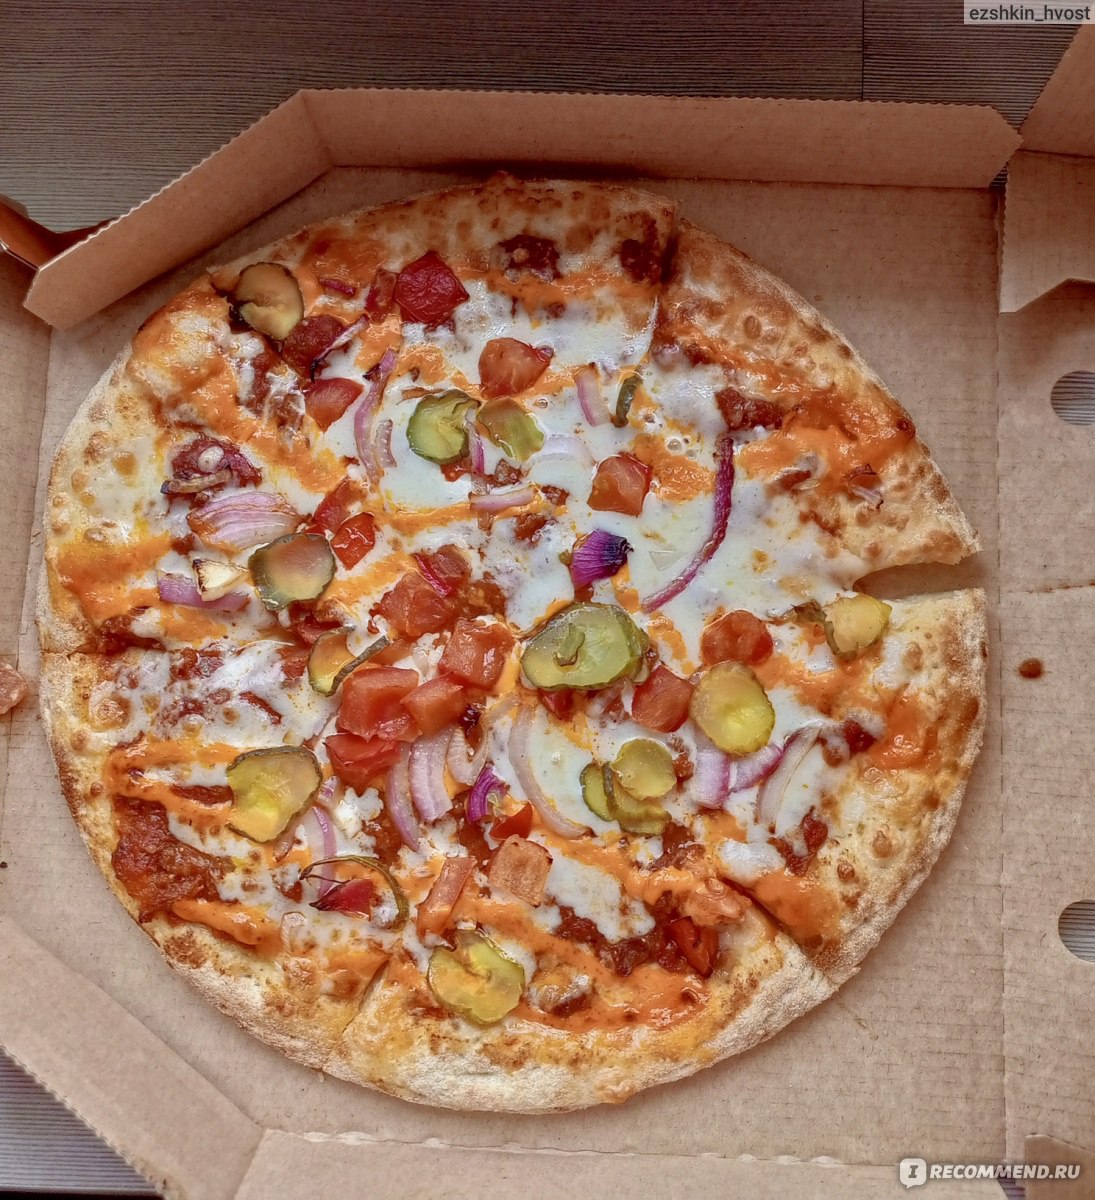 сколько стоит большая пицца пепперони в додо пицце фото 76